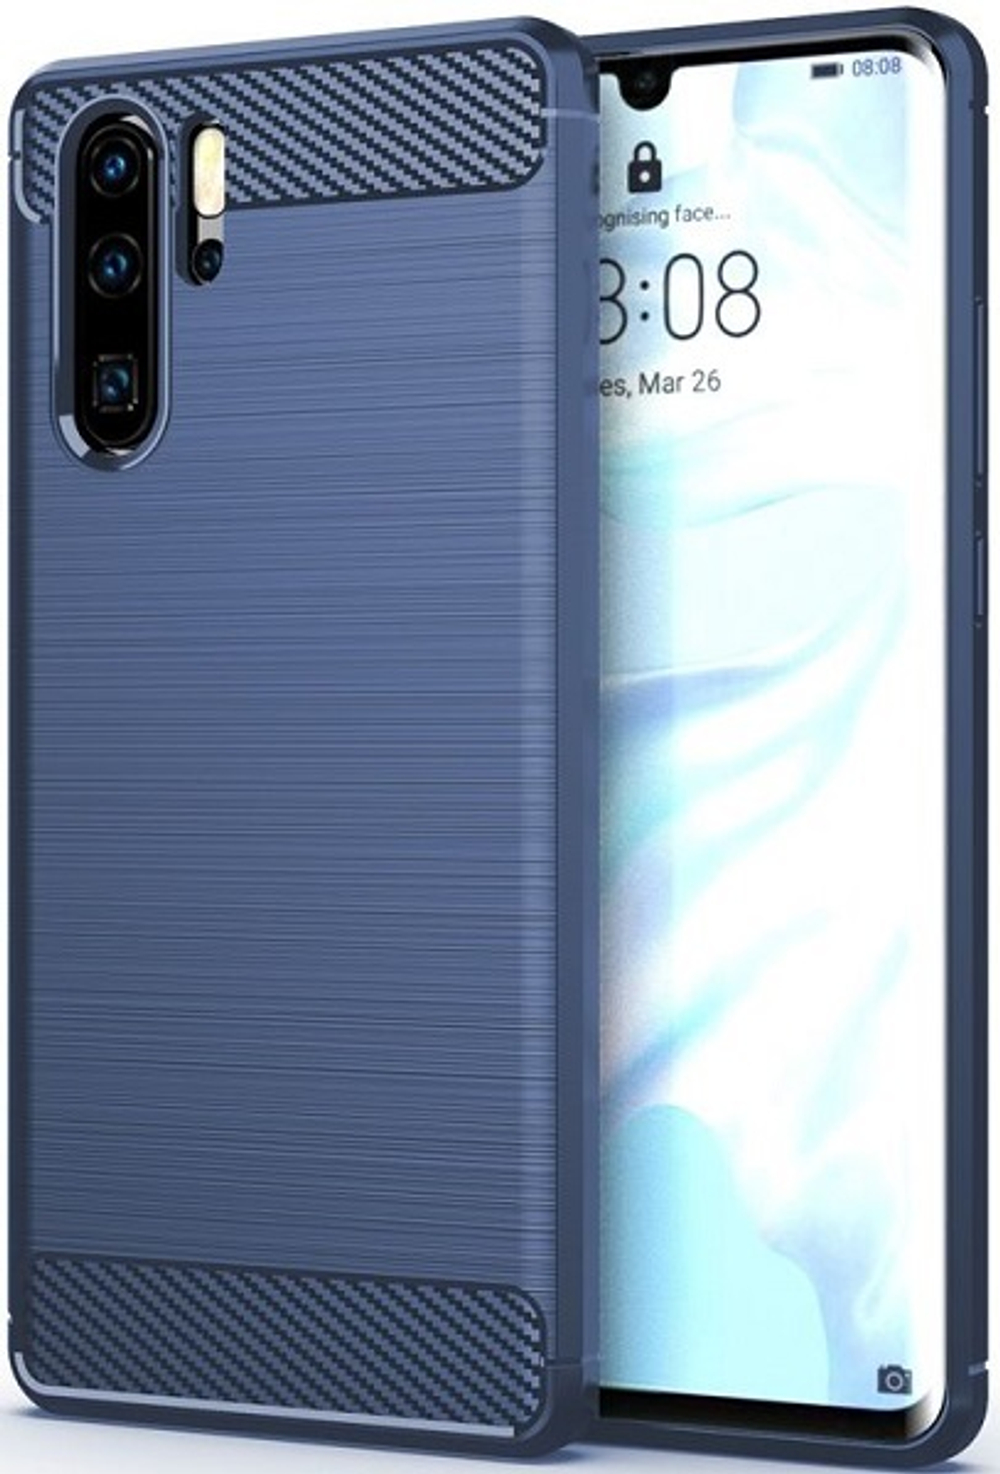 Чехол для Huawei P30 Pro цвет Blue (синий), серия Carbon от Caseport